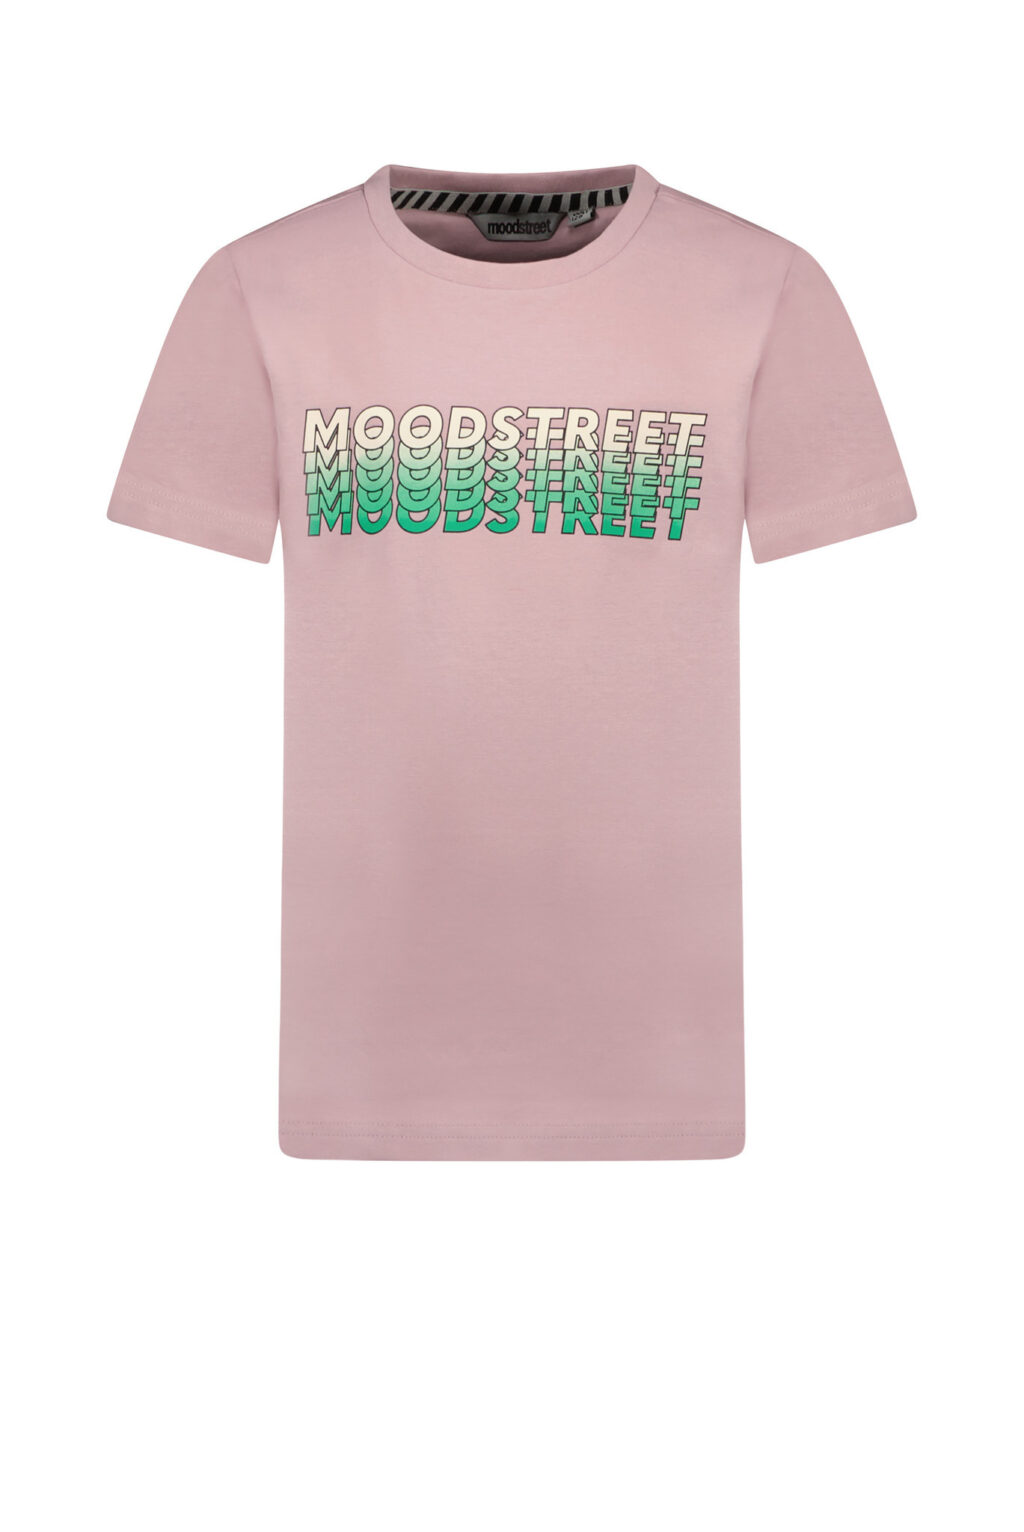 Moodstreet Jongens t-shirt print - Cool lilac ~ Spinze.nl